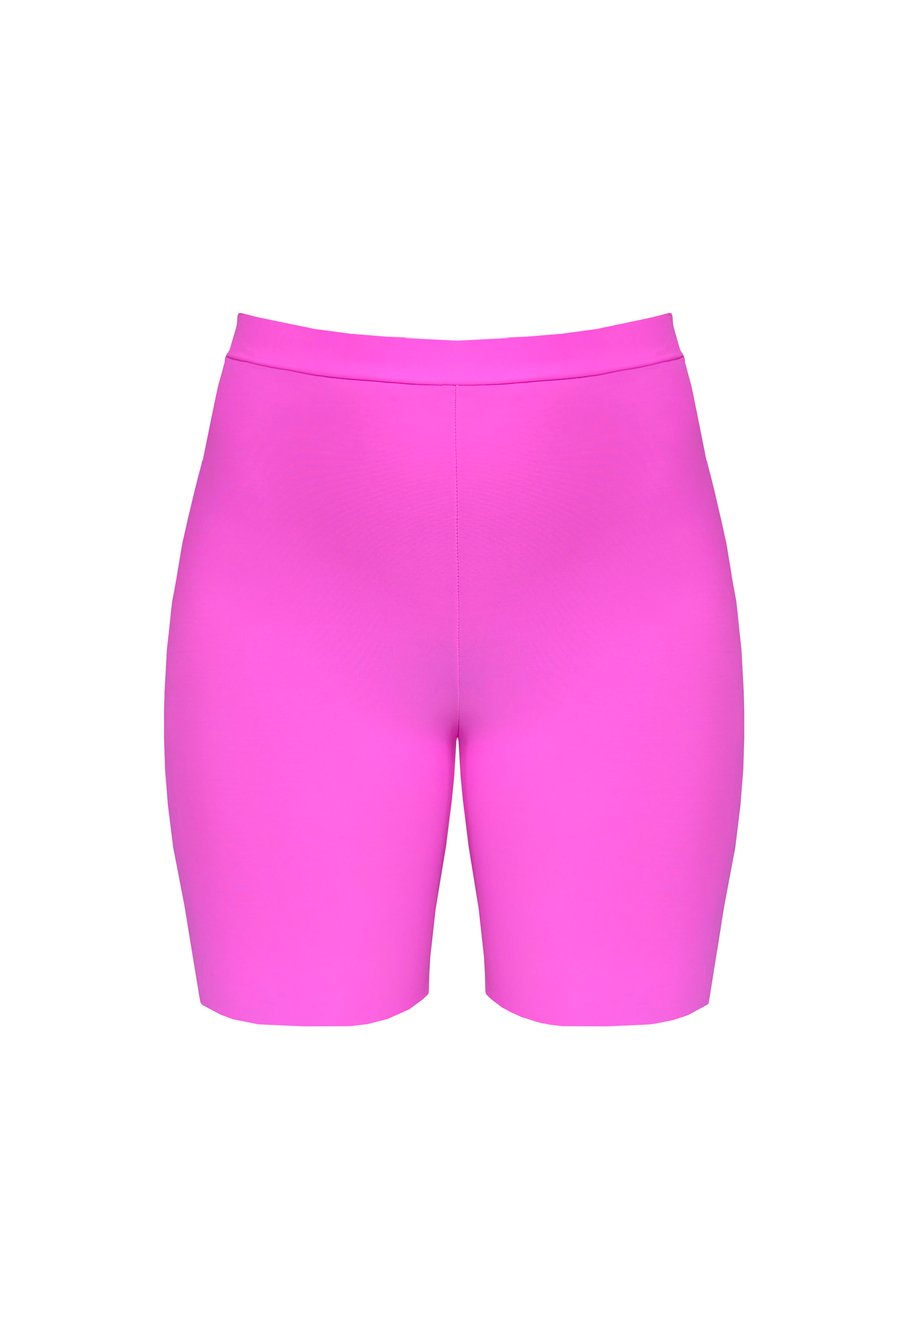 Image of Streamlined Biker Shorts - Bimbo Pink